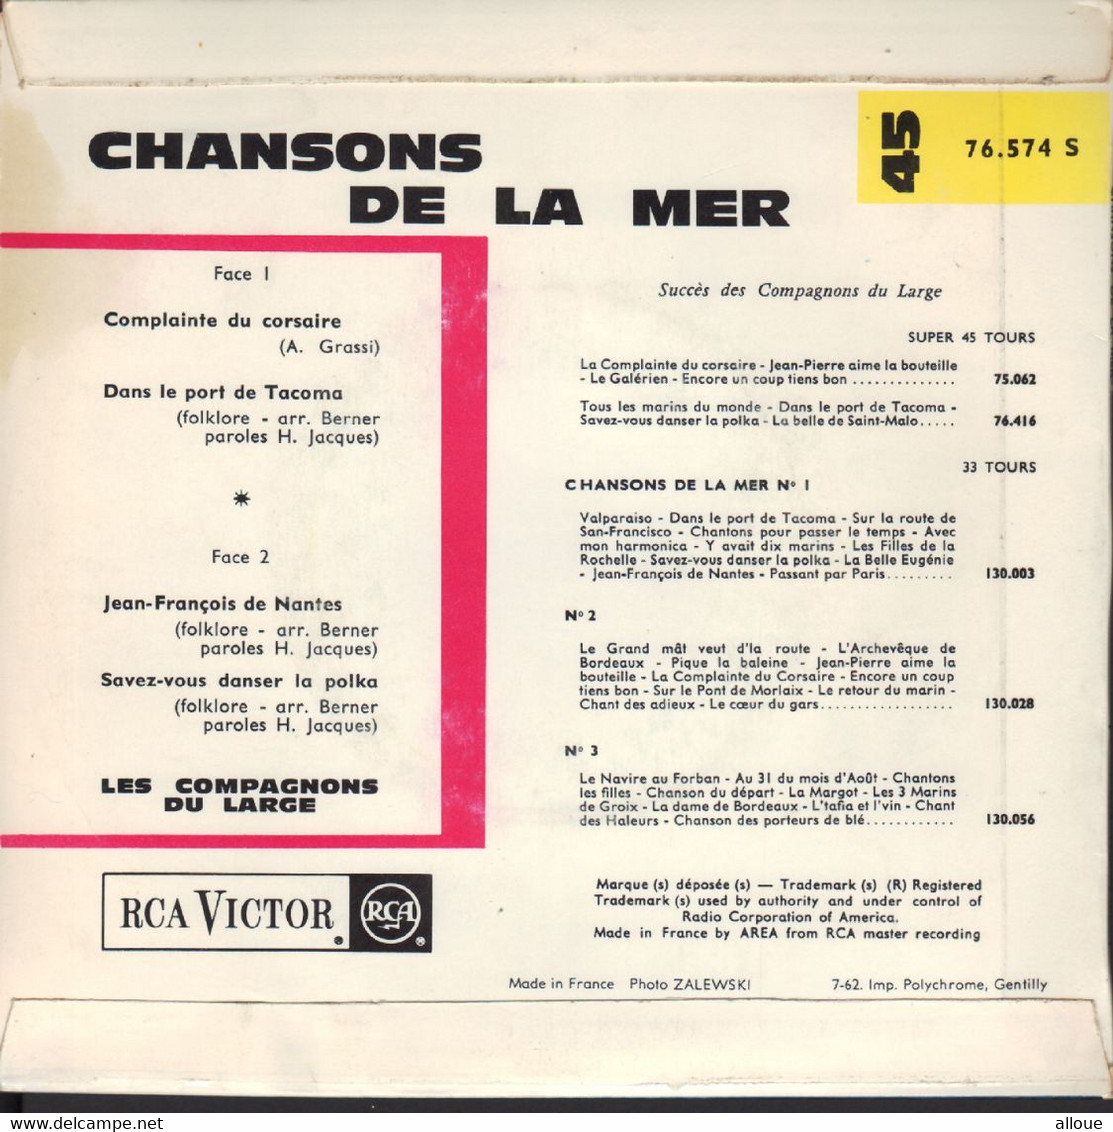 LES COMPAGNONS DU LARGE  - FR EP - CHANSONS DE LA MER - World Music